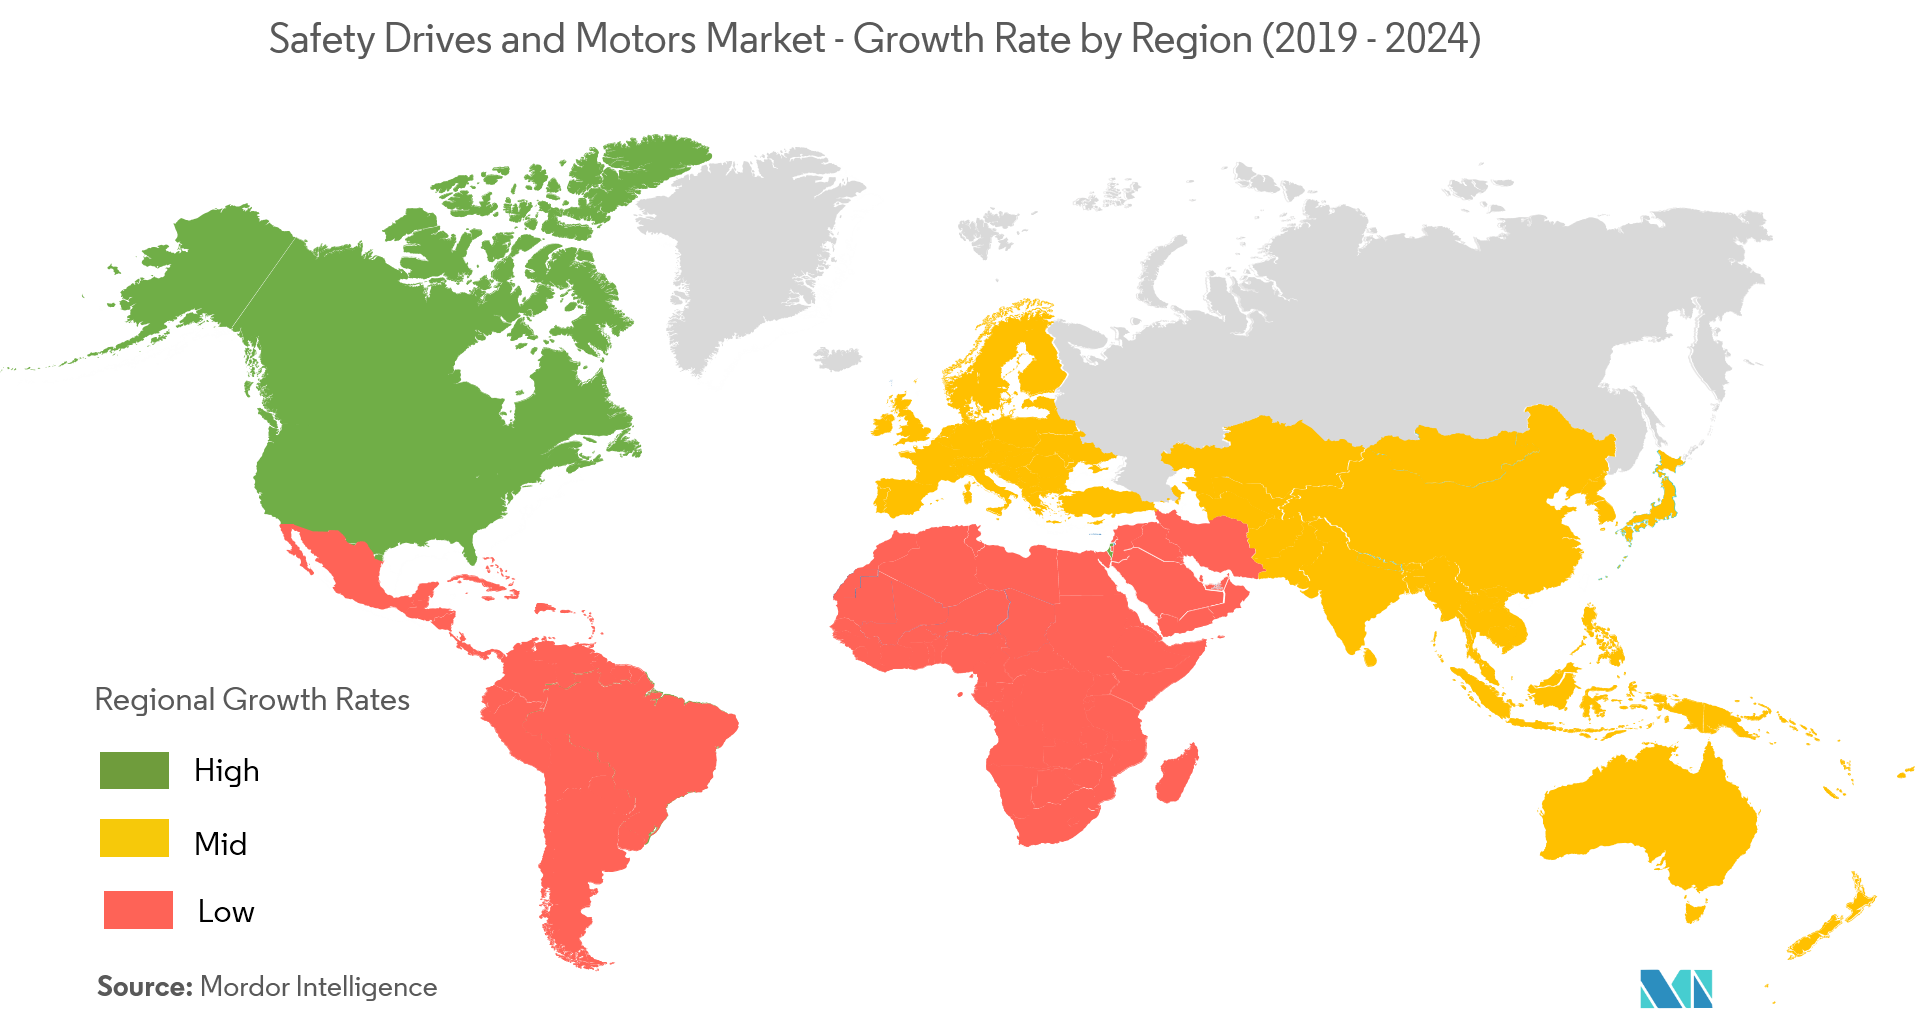 安全驱动和电机市场 - 按地区划分的增长率（2019-2024）